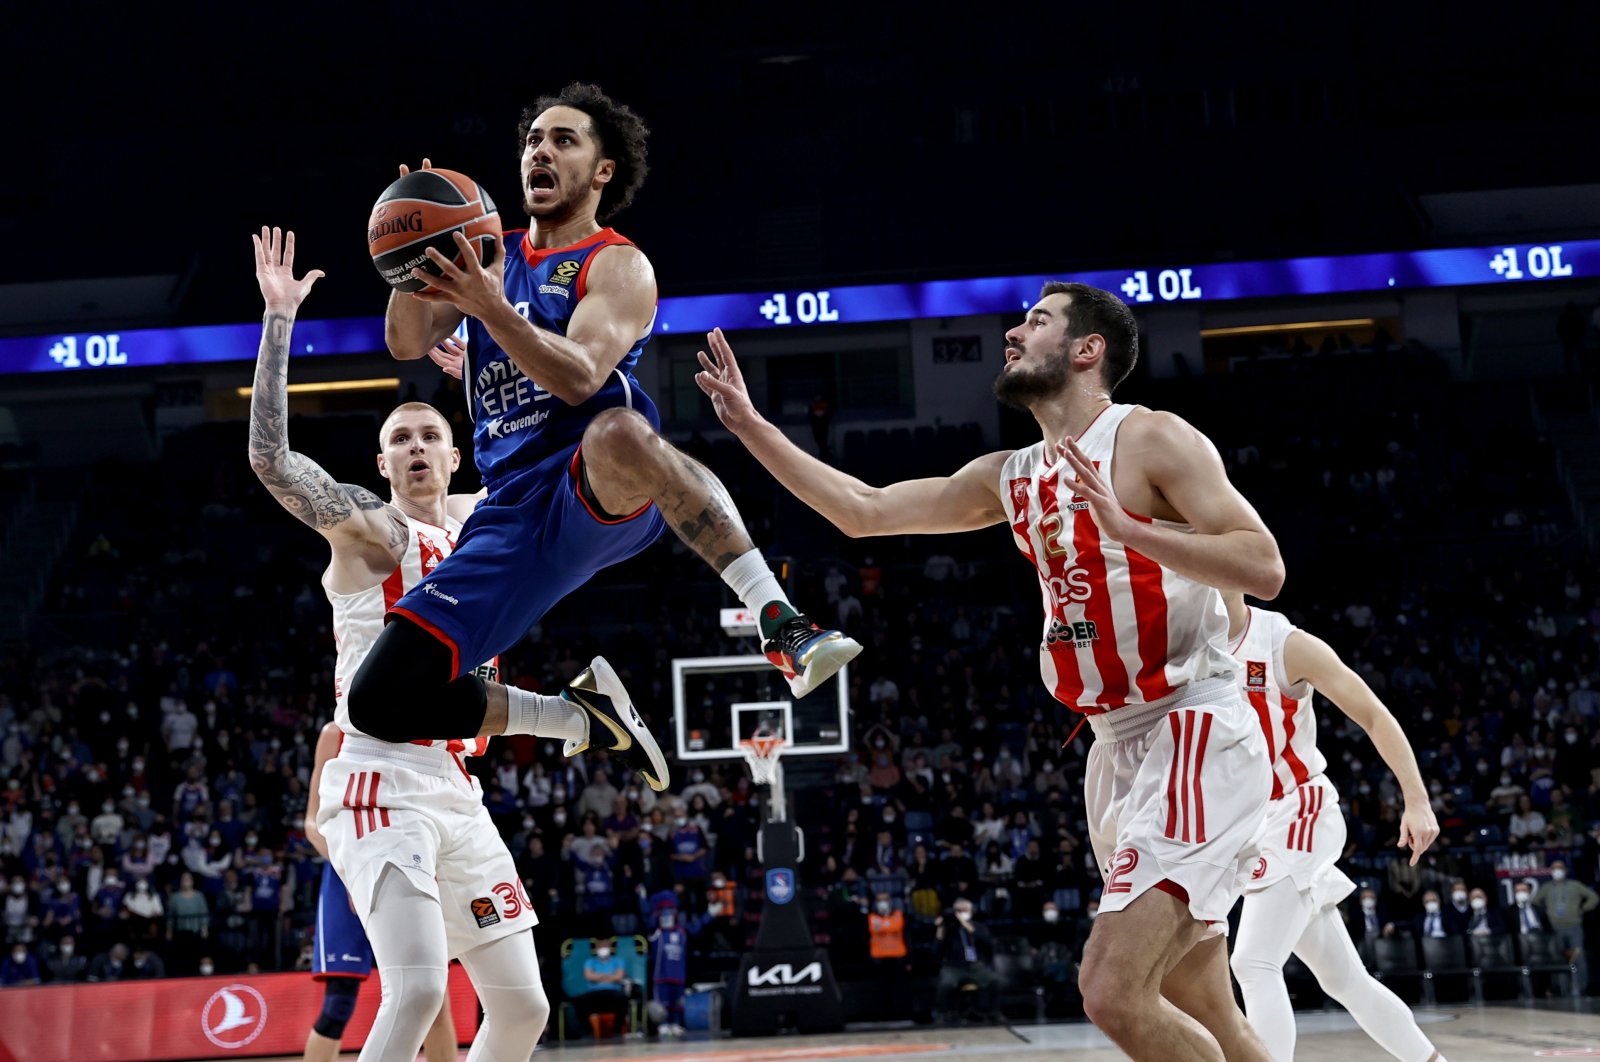 Efes berguling Crvena Zvezda untuk memperpanjang rekor kemenangan EuroLeague